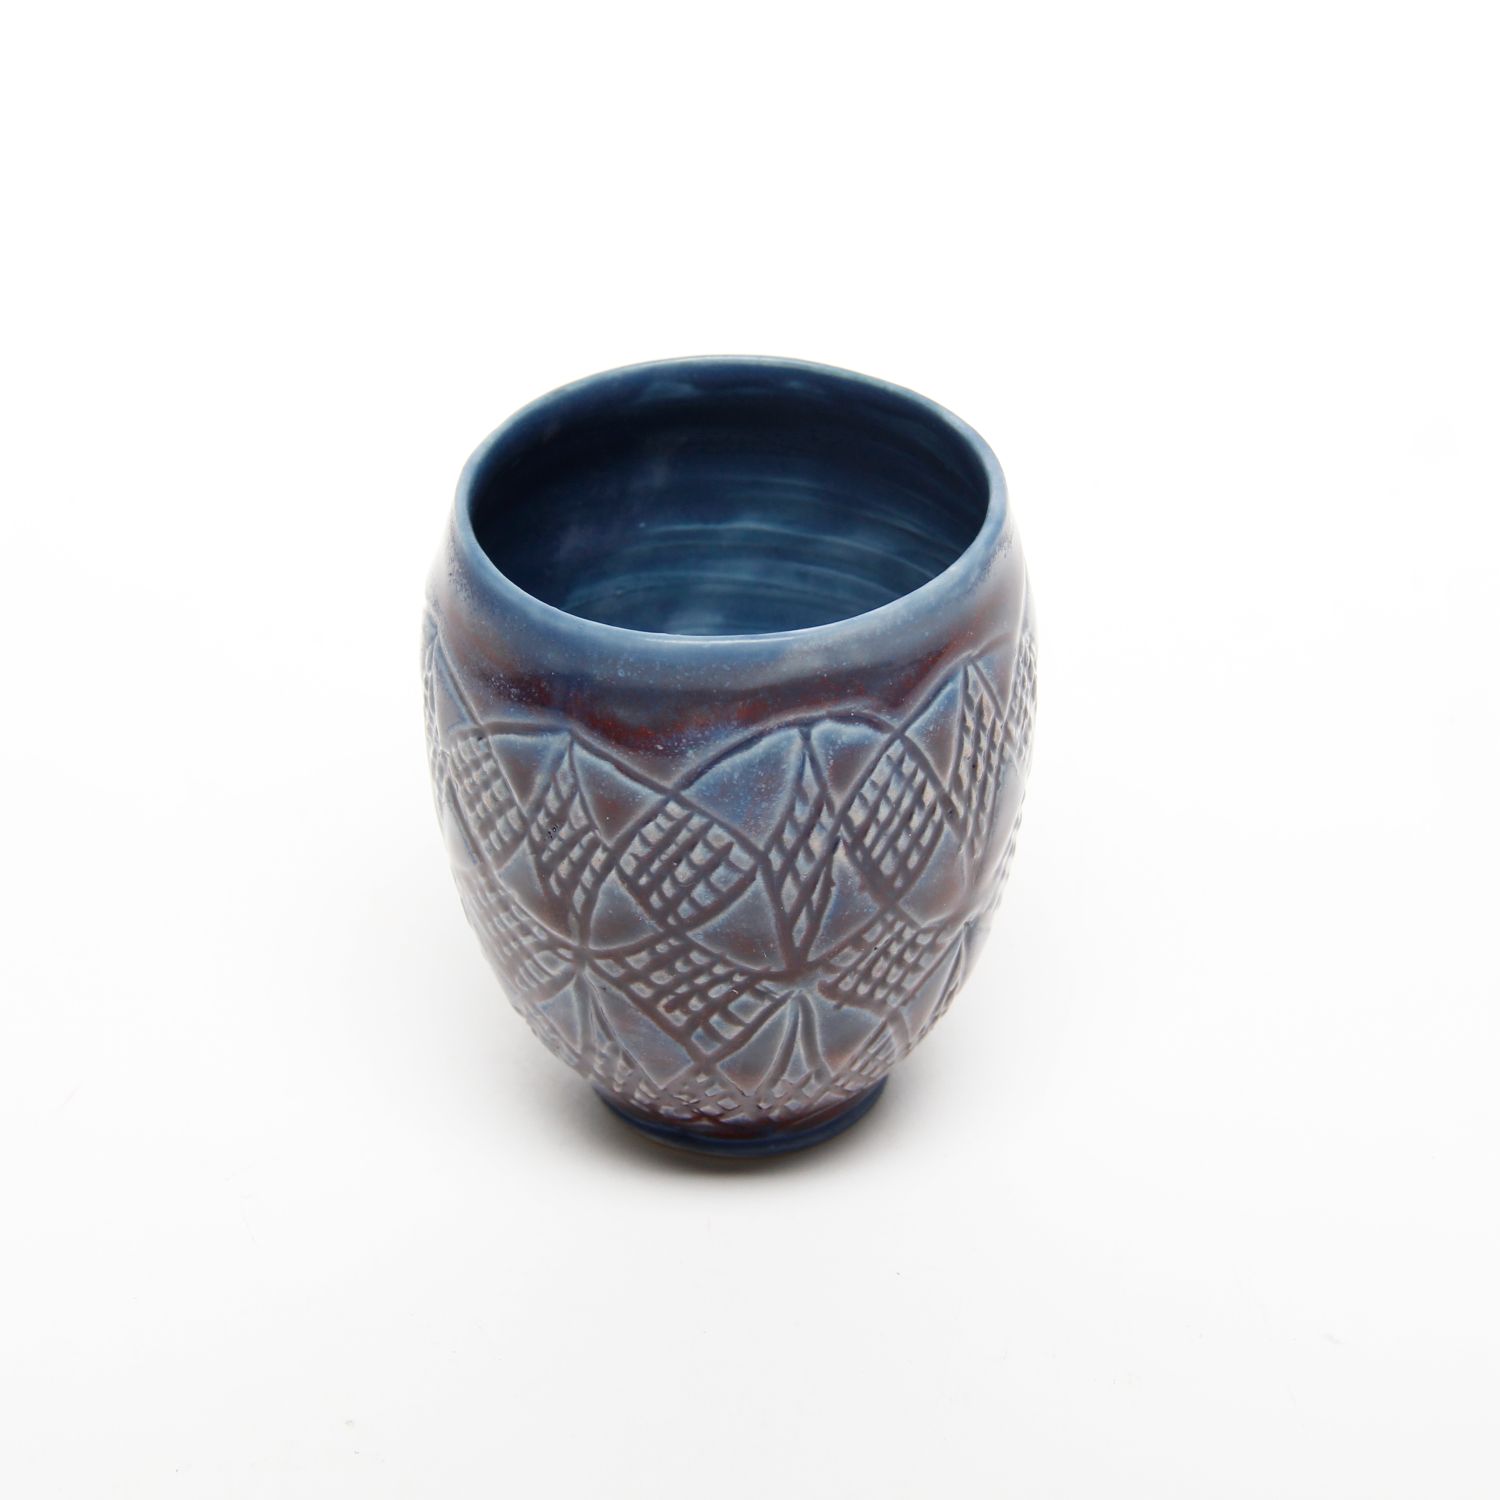 Arlene Kushnir: Purple-Blue Cup Product Image 3 of 3